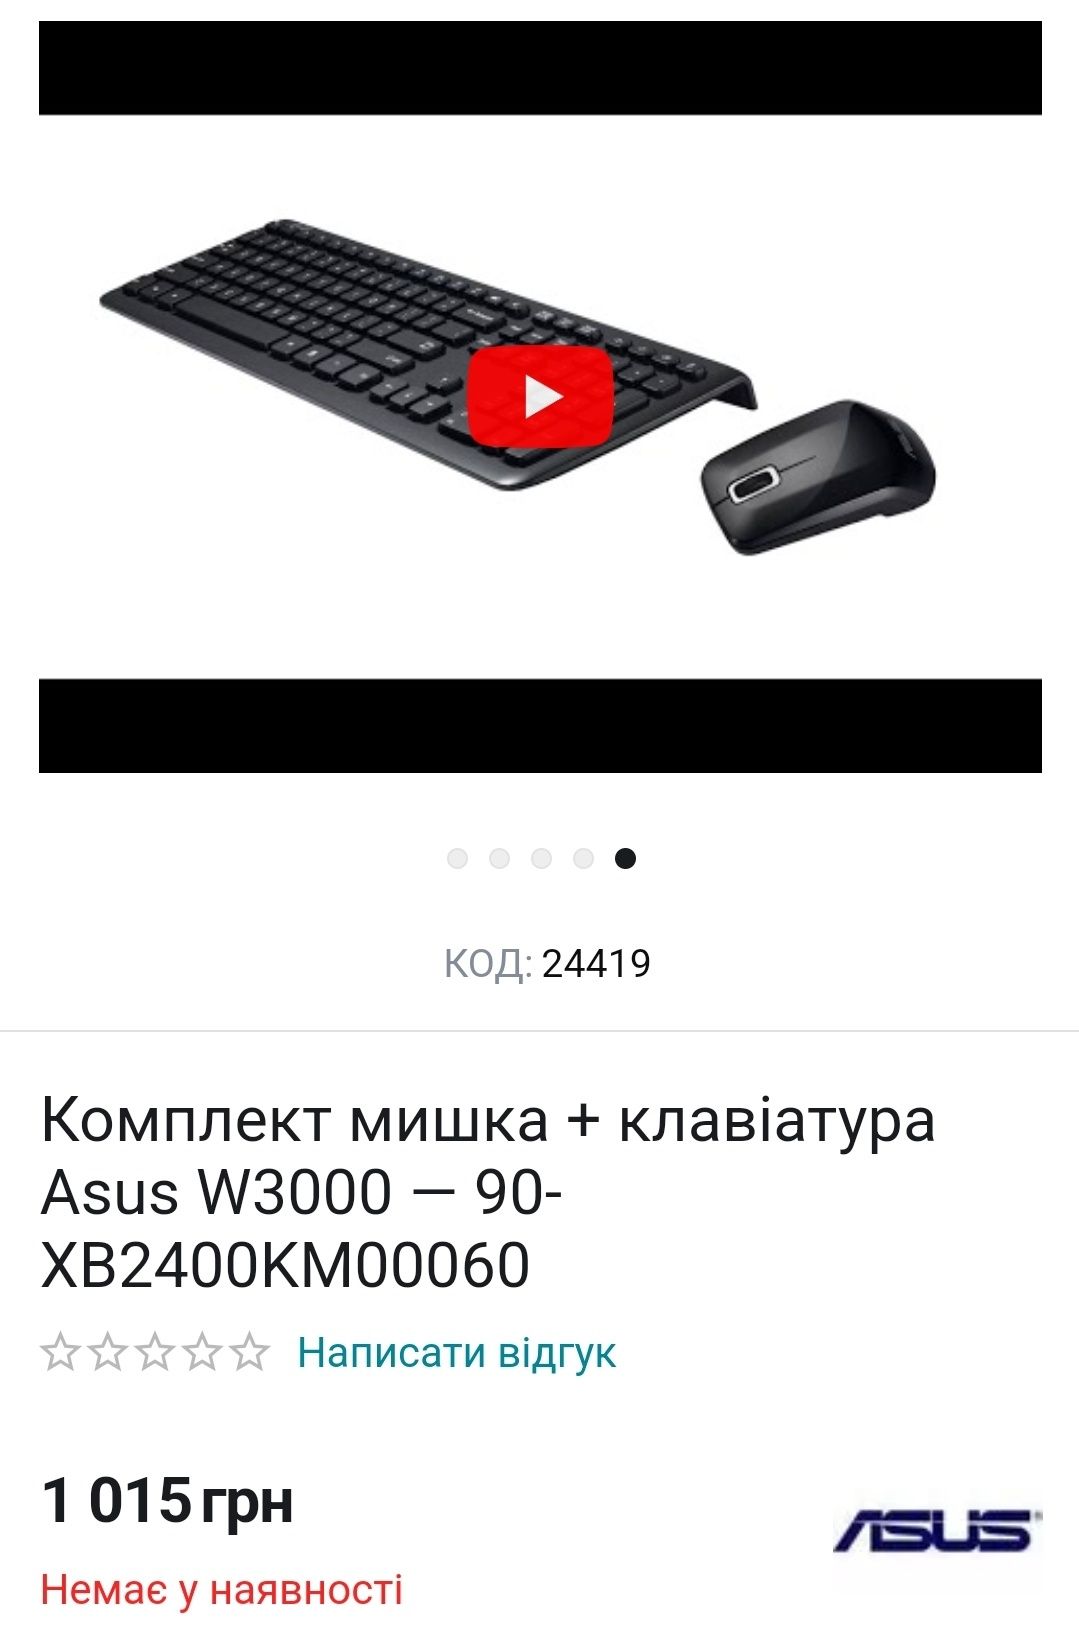 Комплект беспроводная мишка + клавіатура Asus W3000